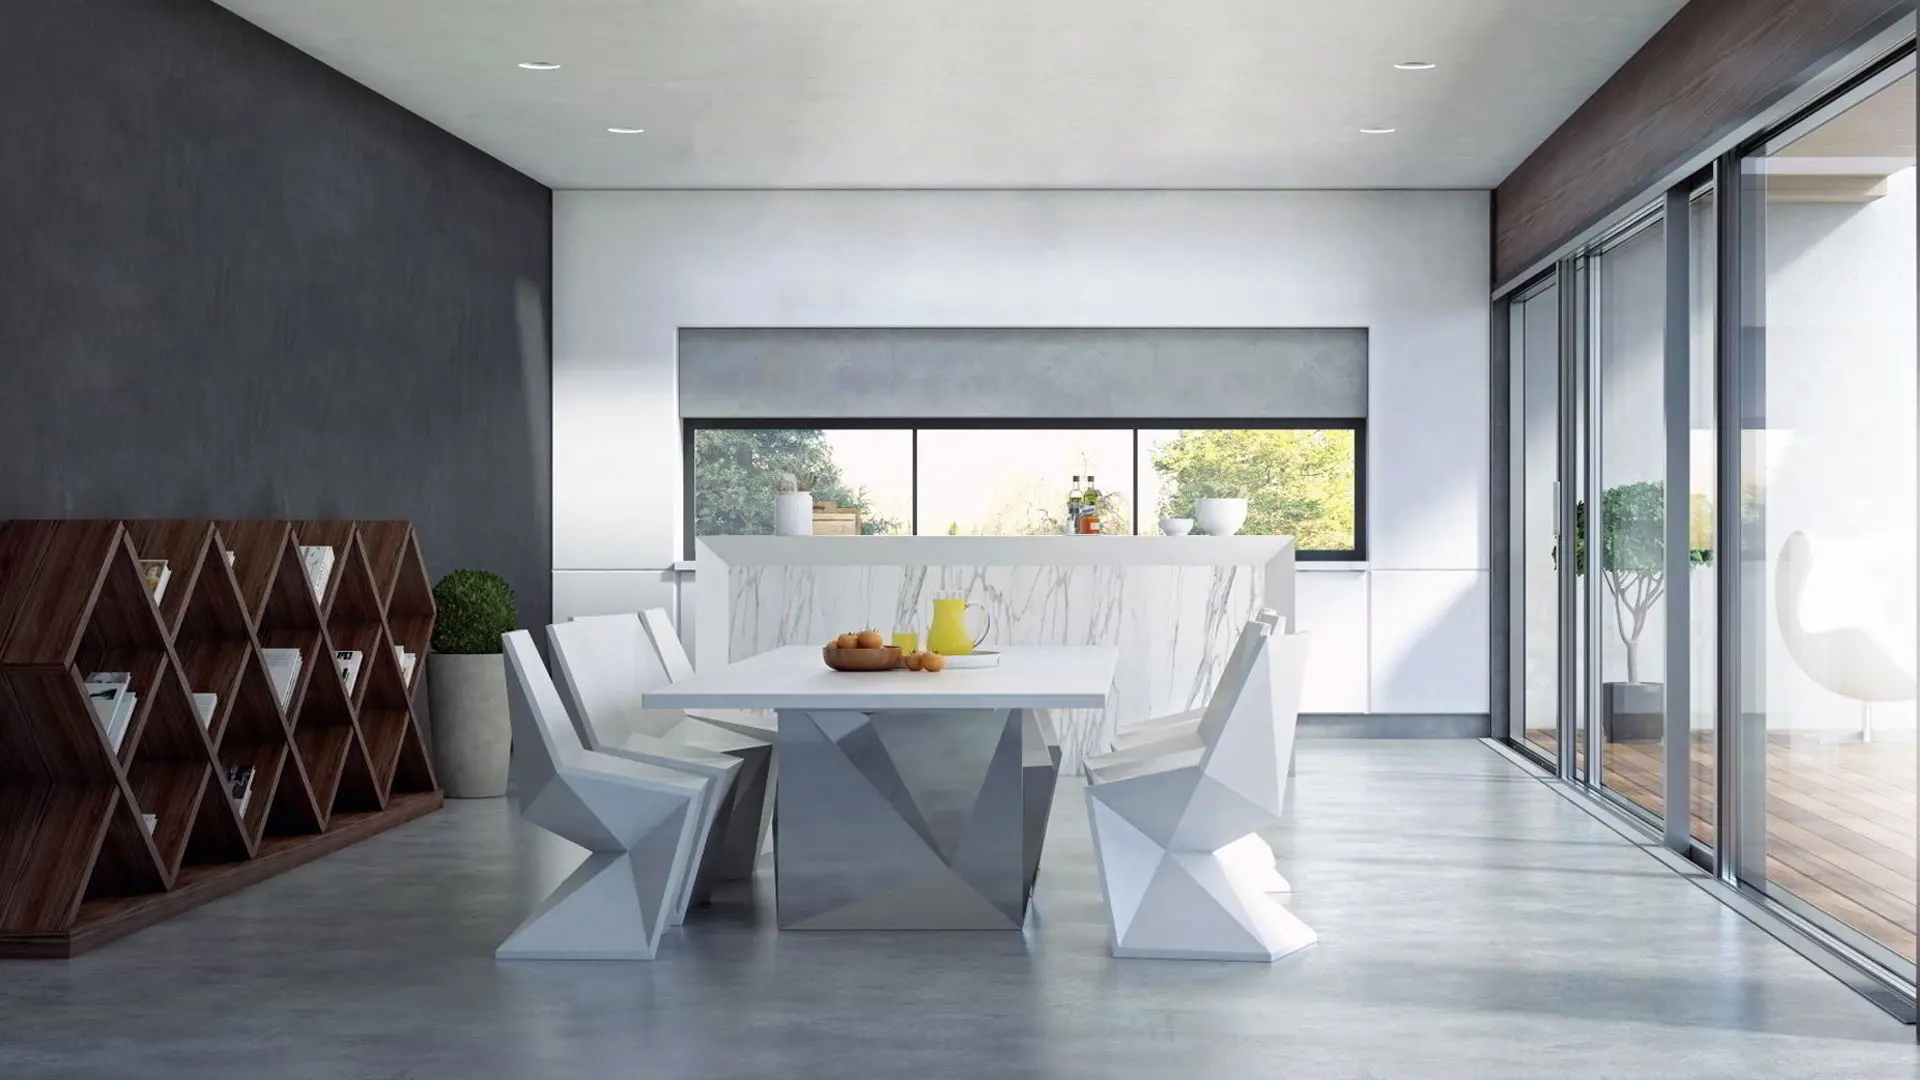 Luksuriøs moderne stue med grå mikrocement på gulv og væg